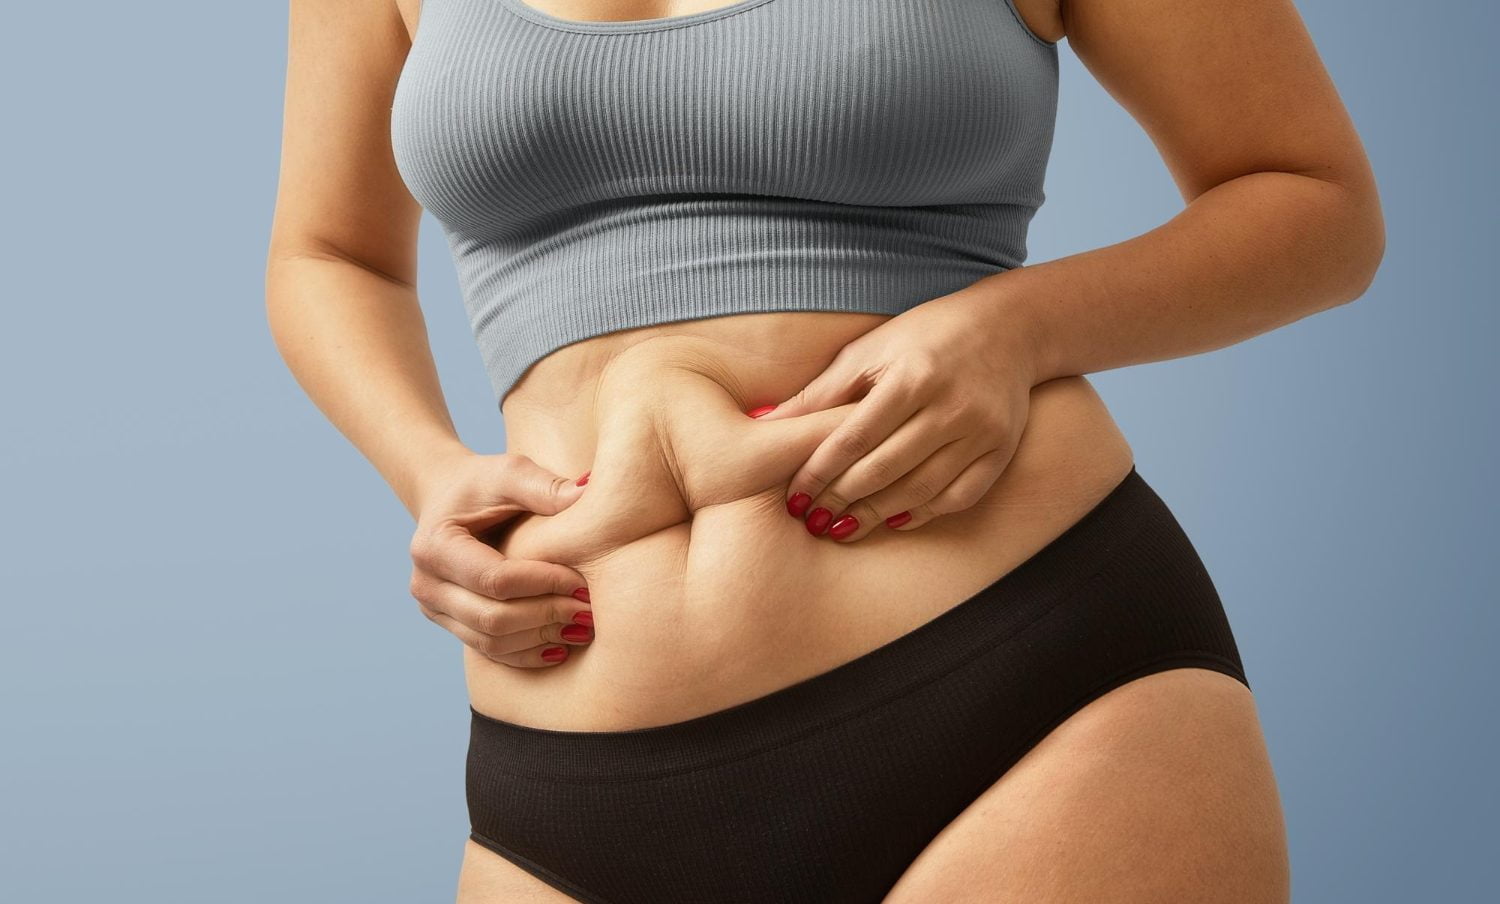 Abdominaux & perte de graisse : comment faire ?